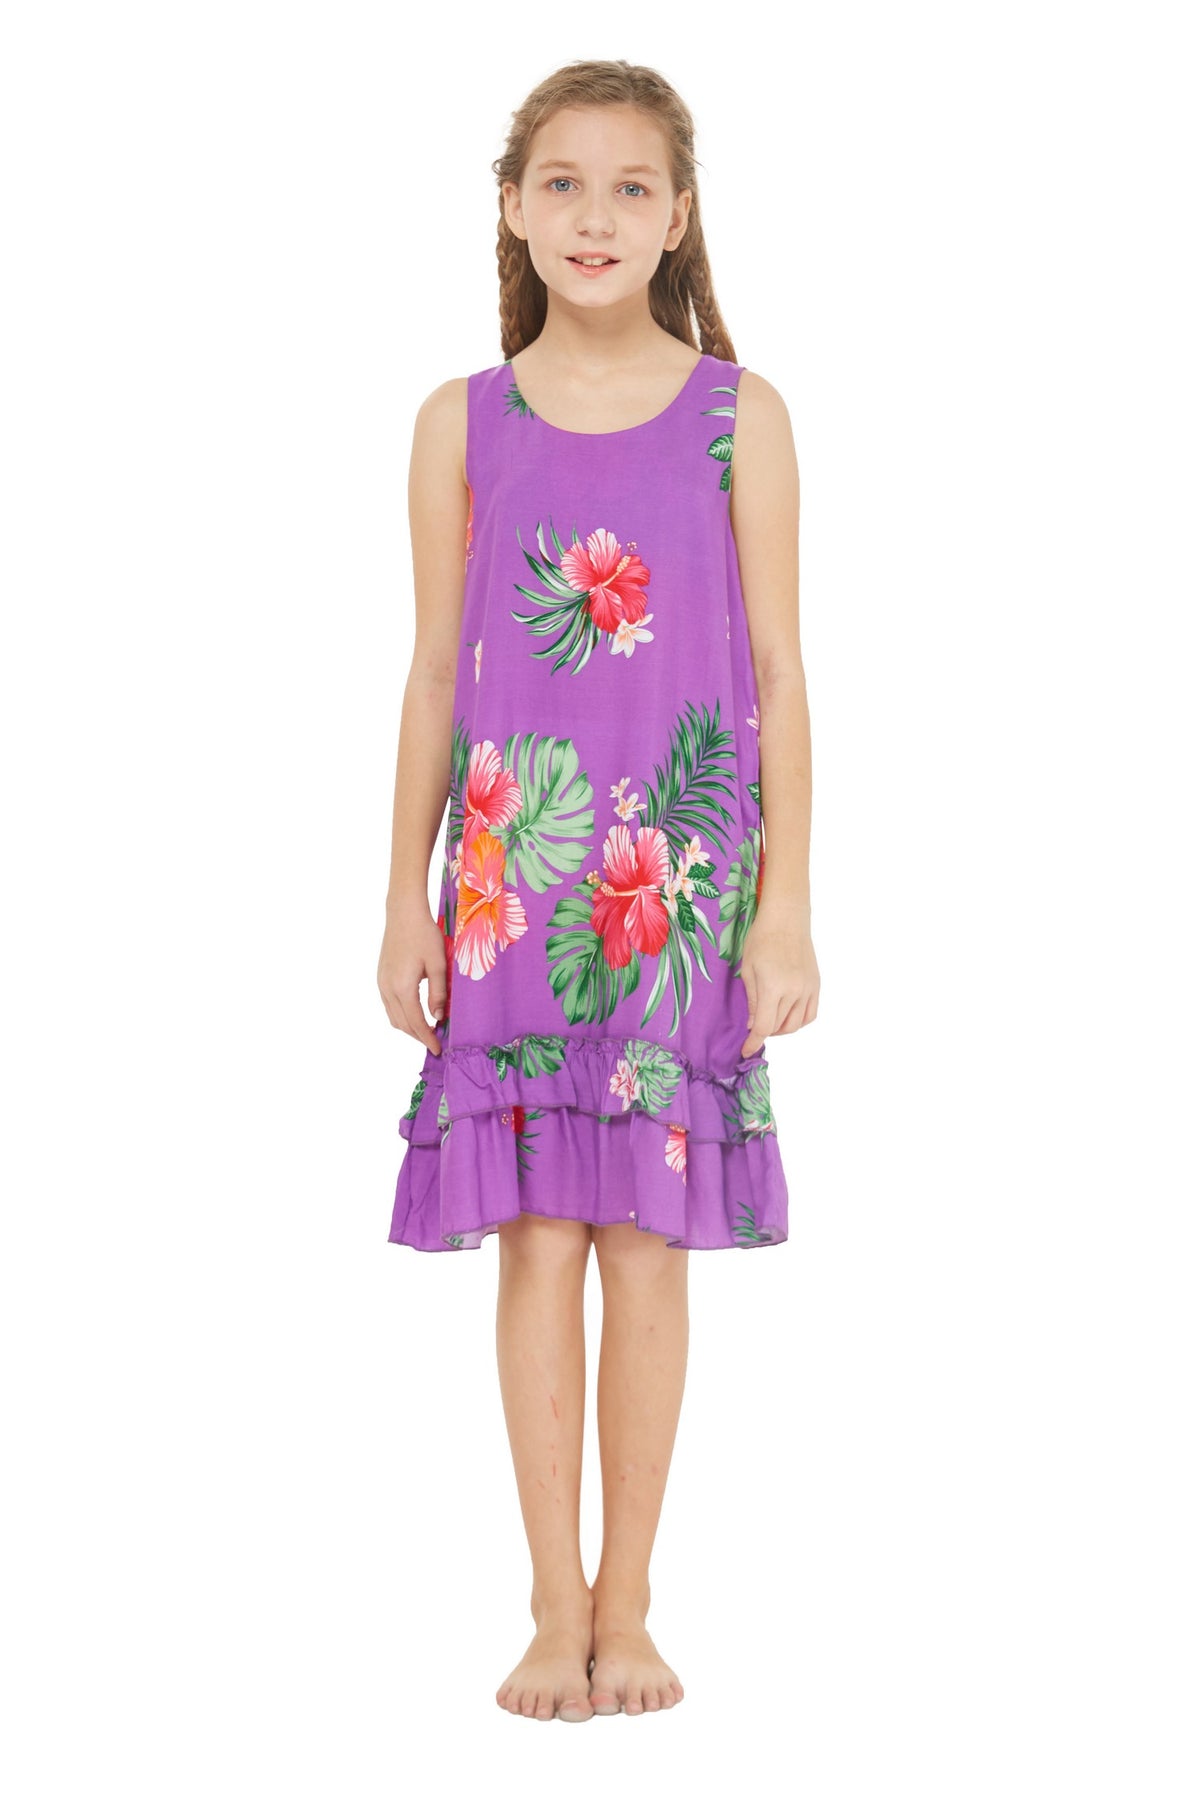 Girl Hawaiian Tank Ruffle Edge Dress in Pretty Tropical in Purple Size ...